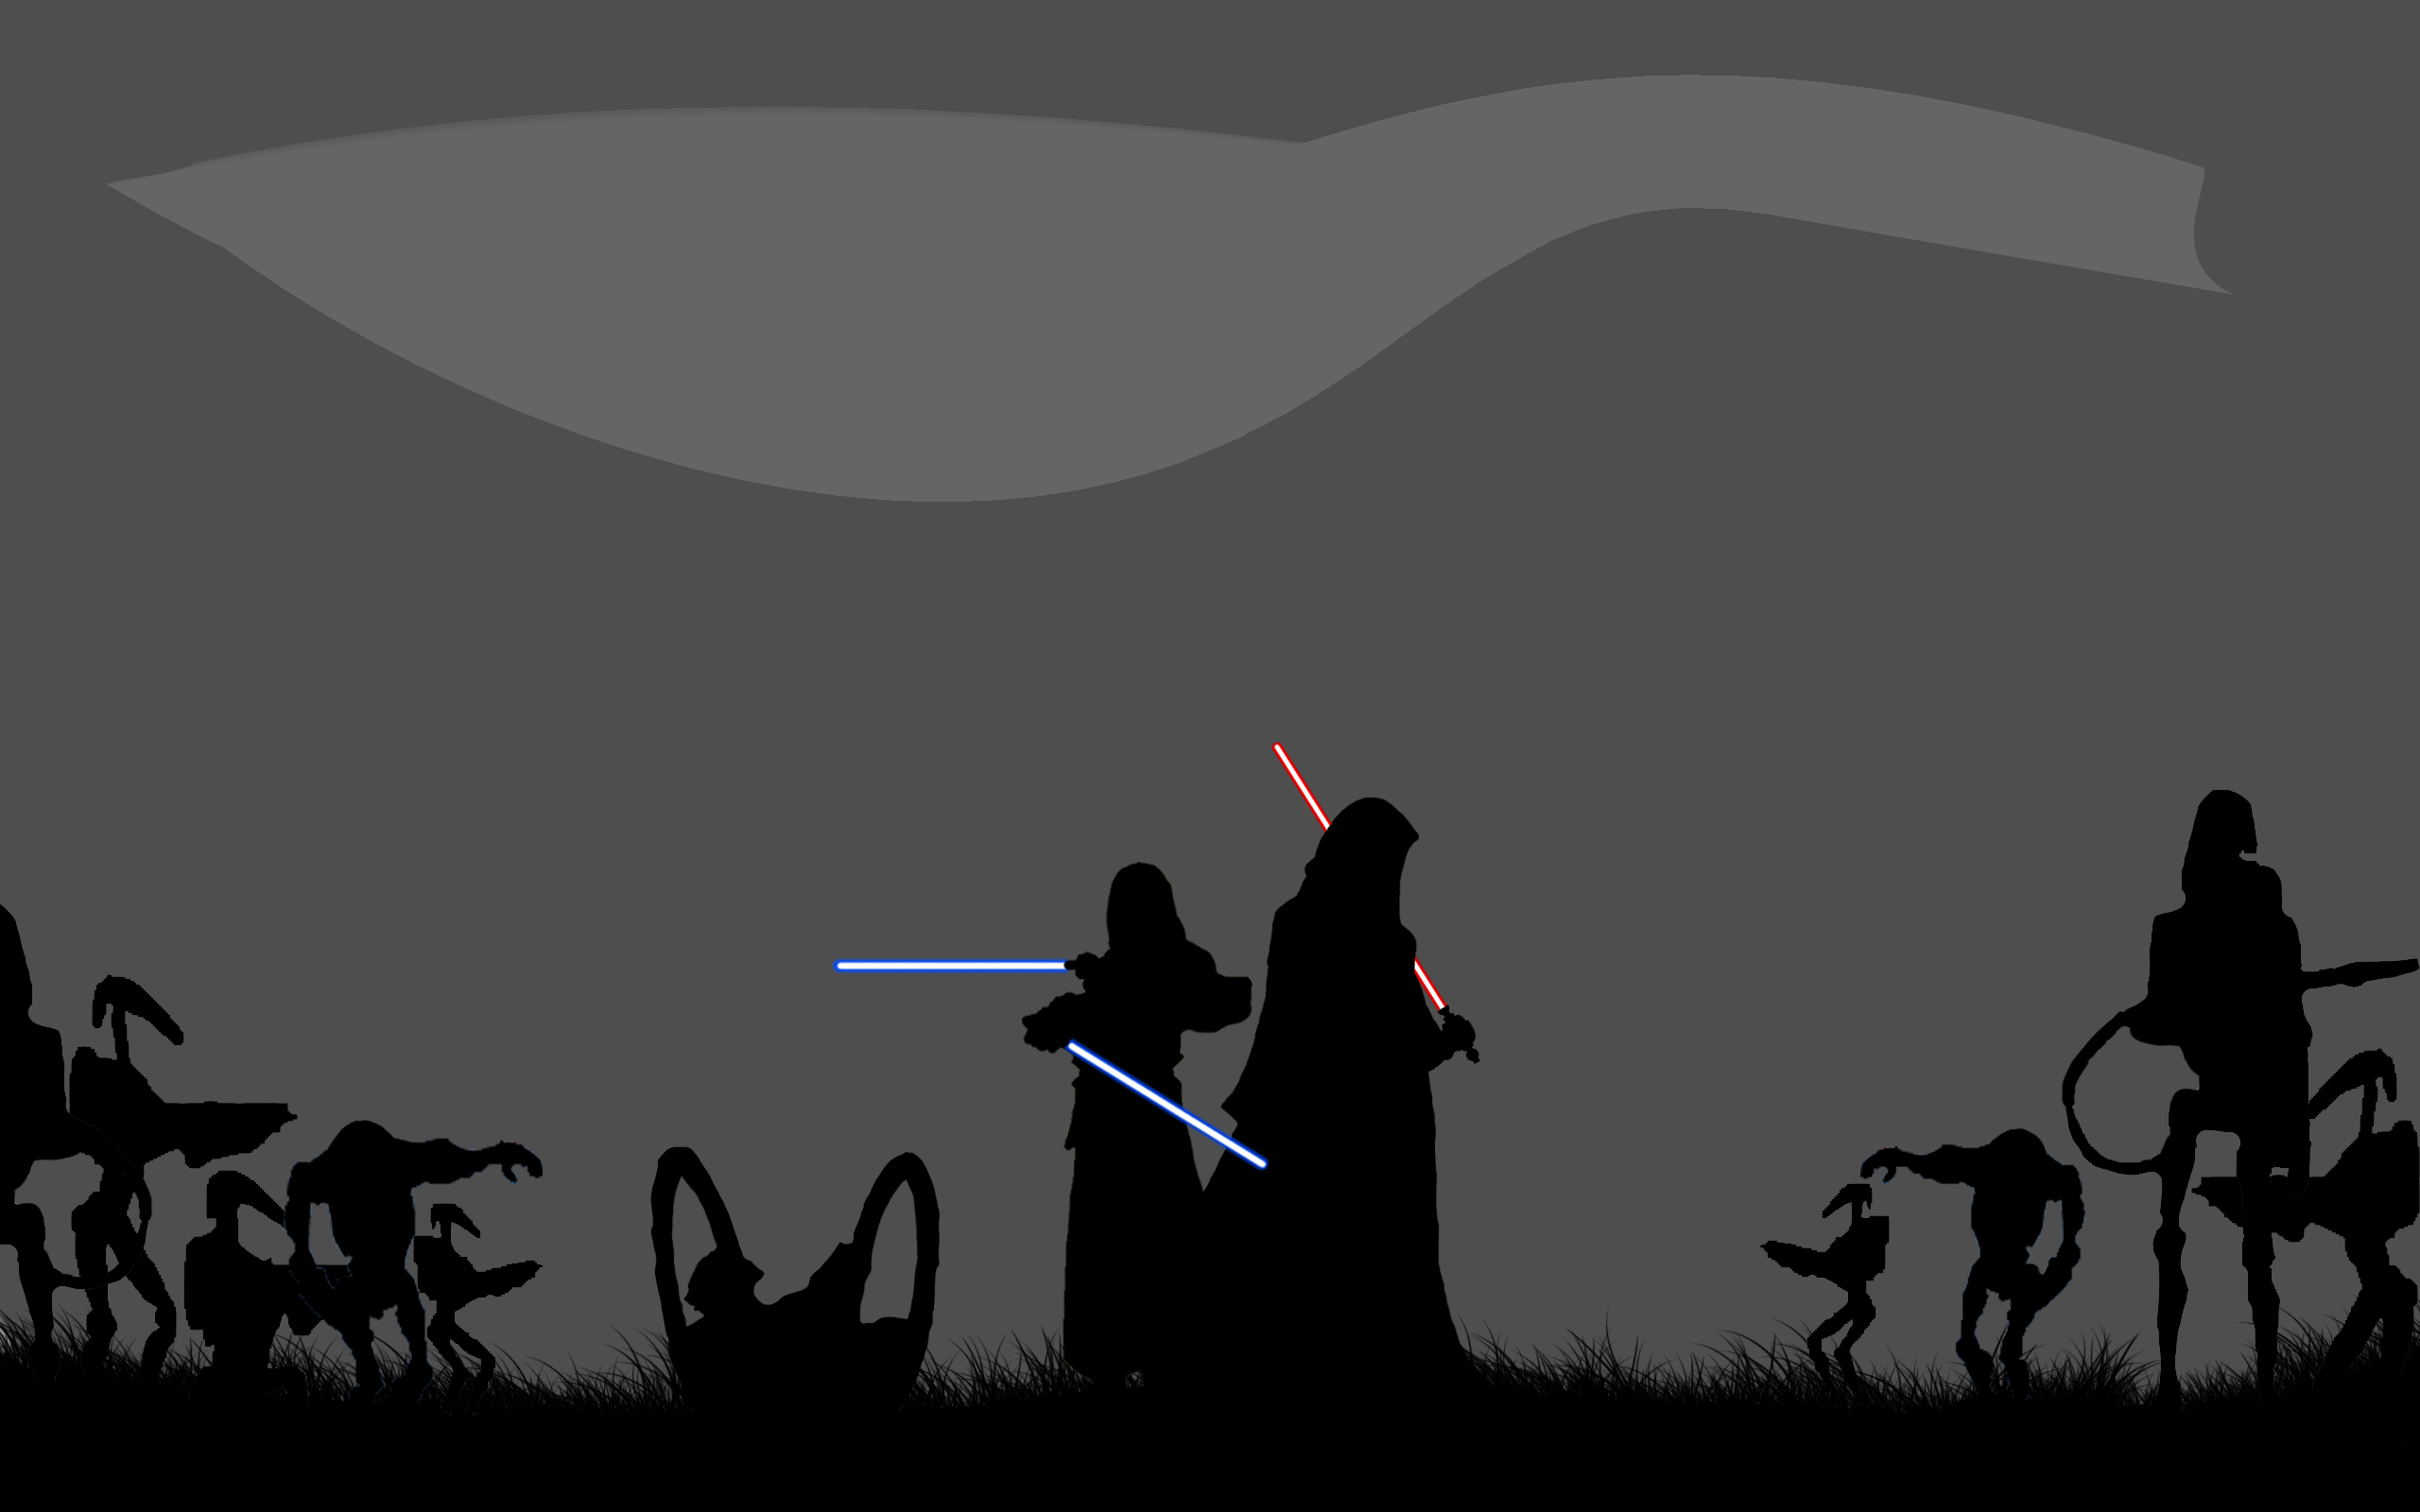 Sci Fi Star Wars desktop wallpaper.